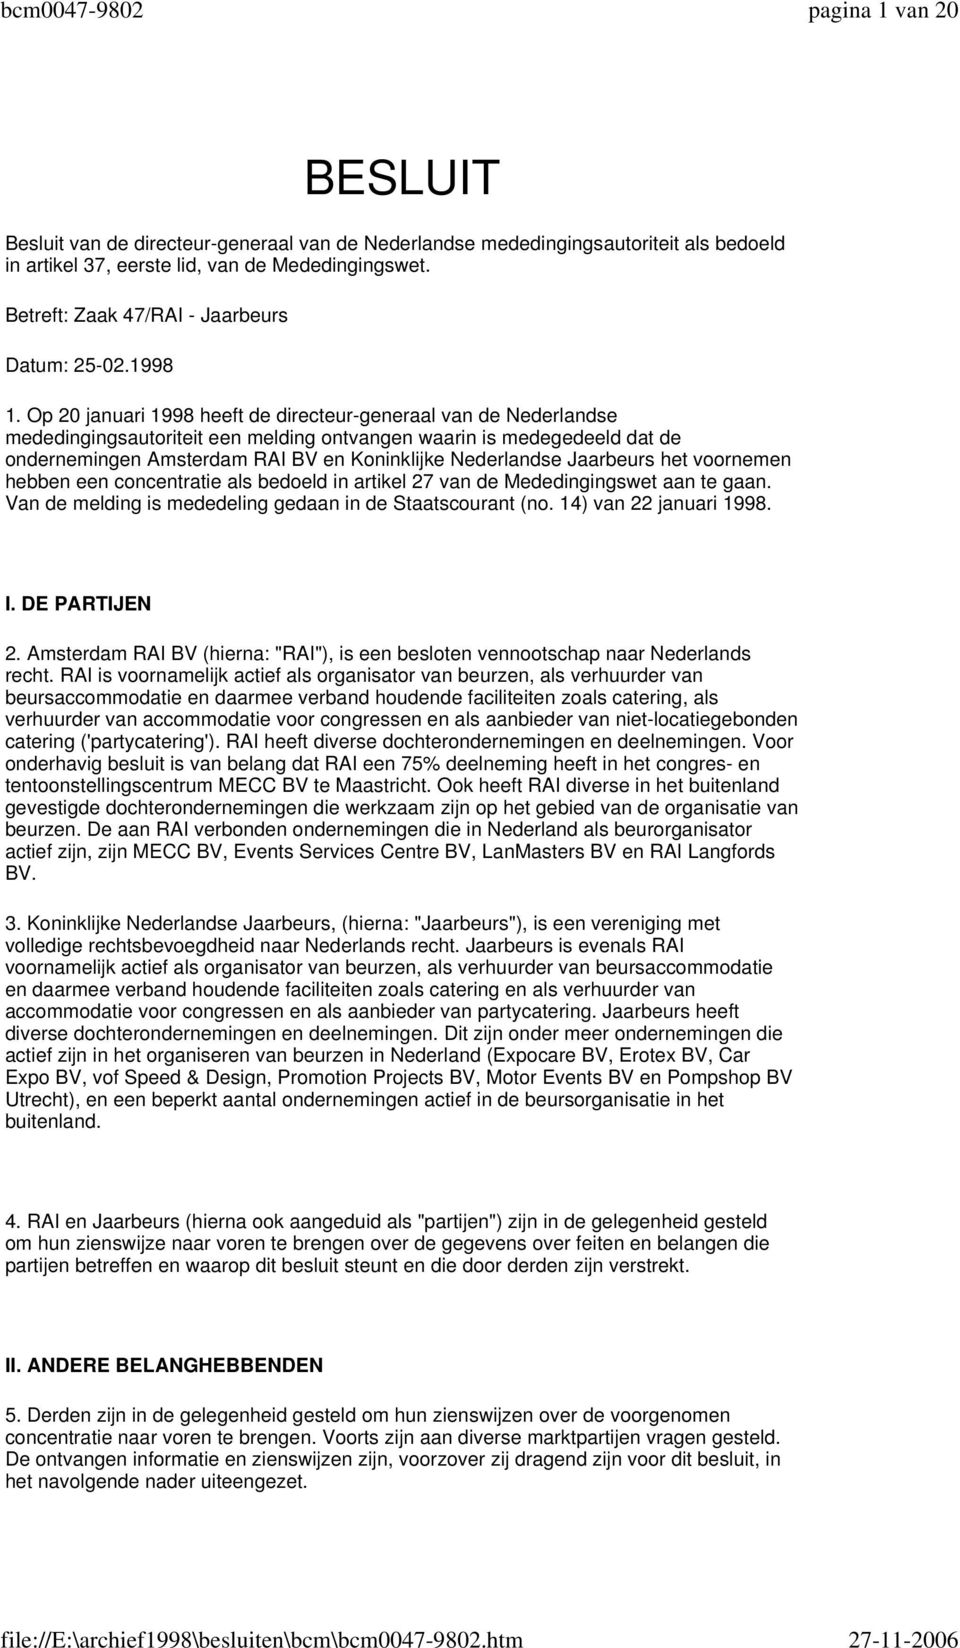 Op 20 januari 1998 heeft de directeur-generaal van de Nederlandse mededingingsautoriteit een melding ontvangen waarin is medegedeeld dat de ondernemingen Amsterdam RAI BV en Koninklijke Nederlandse